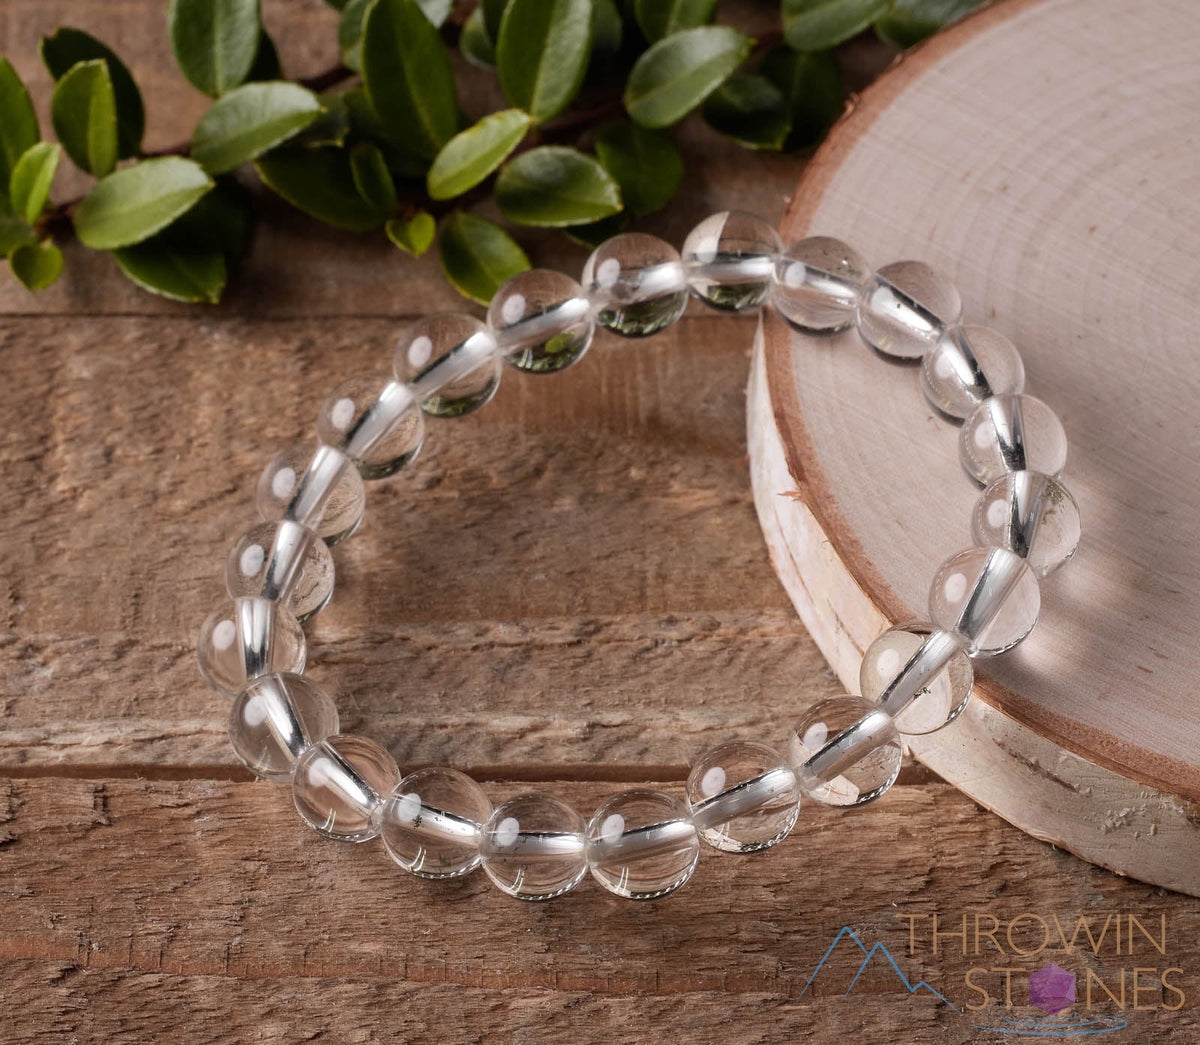 Natural Gemstone Beads Bracelet, 6mm, 8mm, 10mm Crystal Beads Bracelet,  Energy Crystal Bracelet, Handmade Bracelet -  Norway